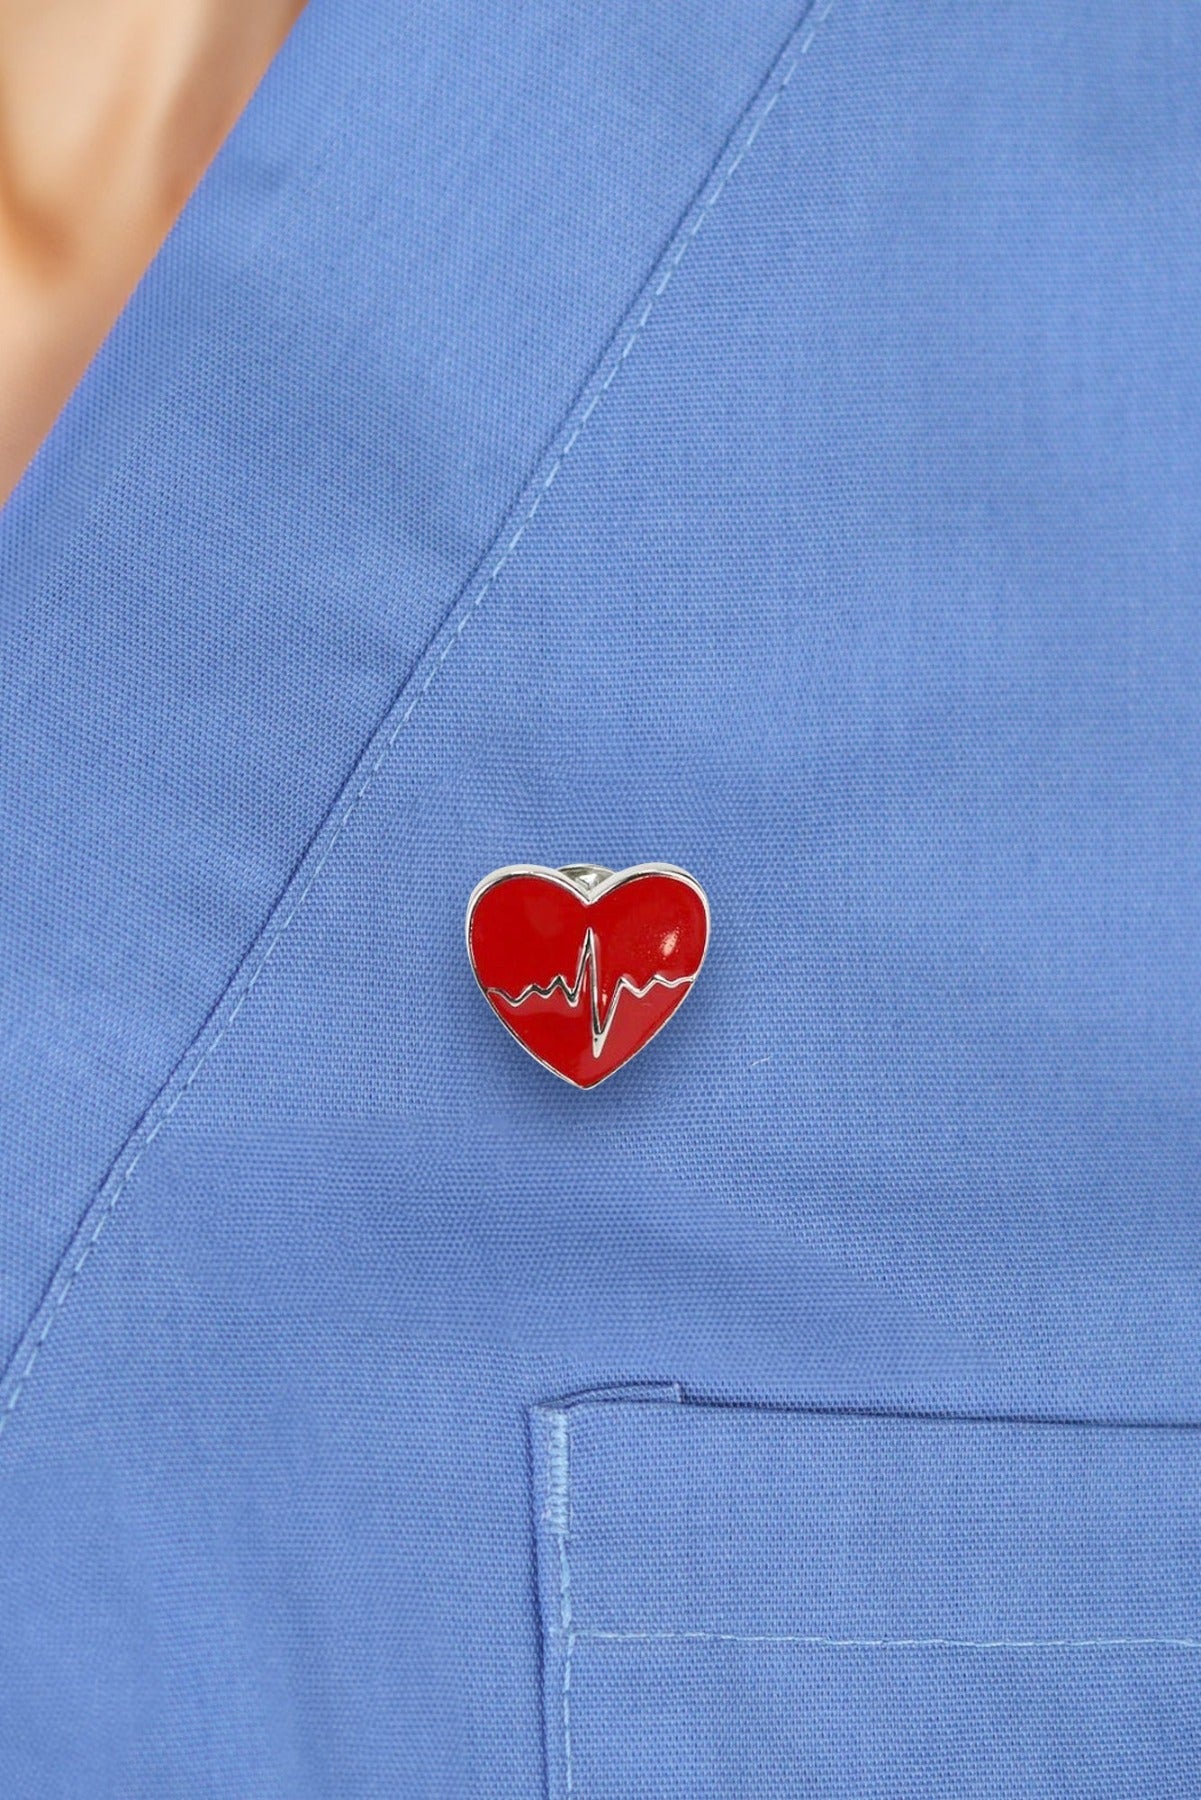 Cardiology Pin